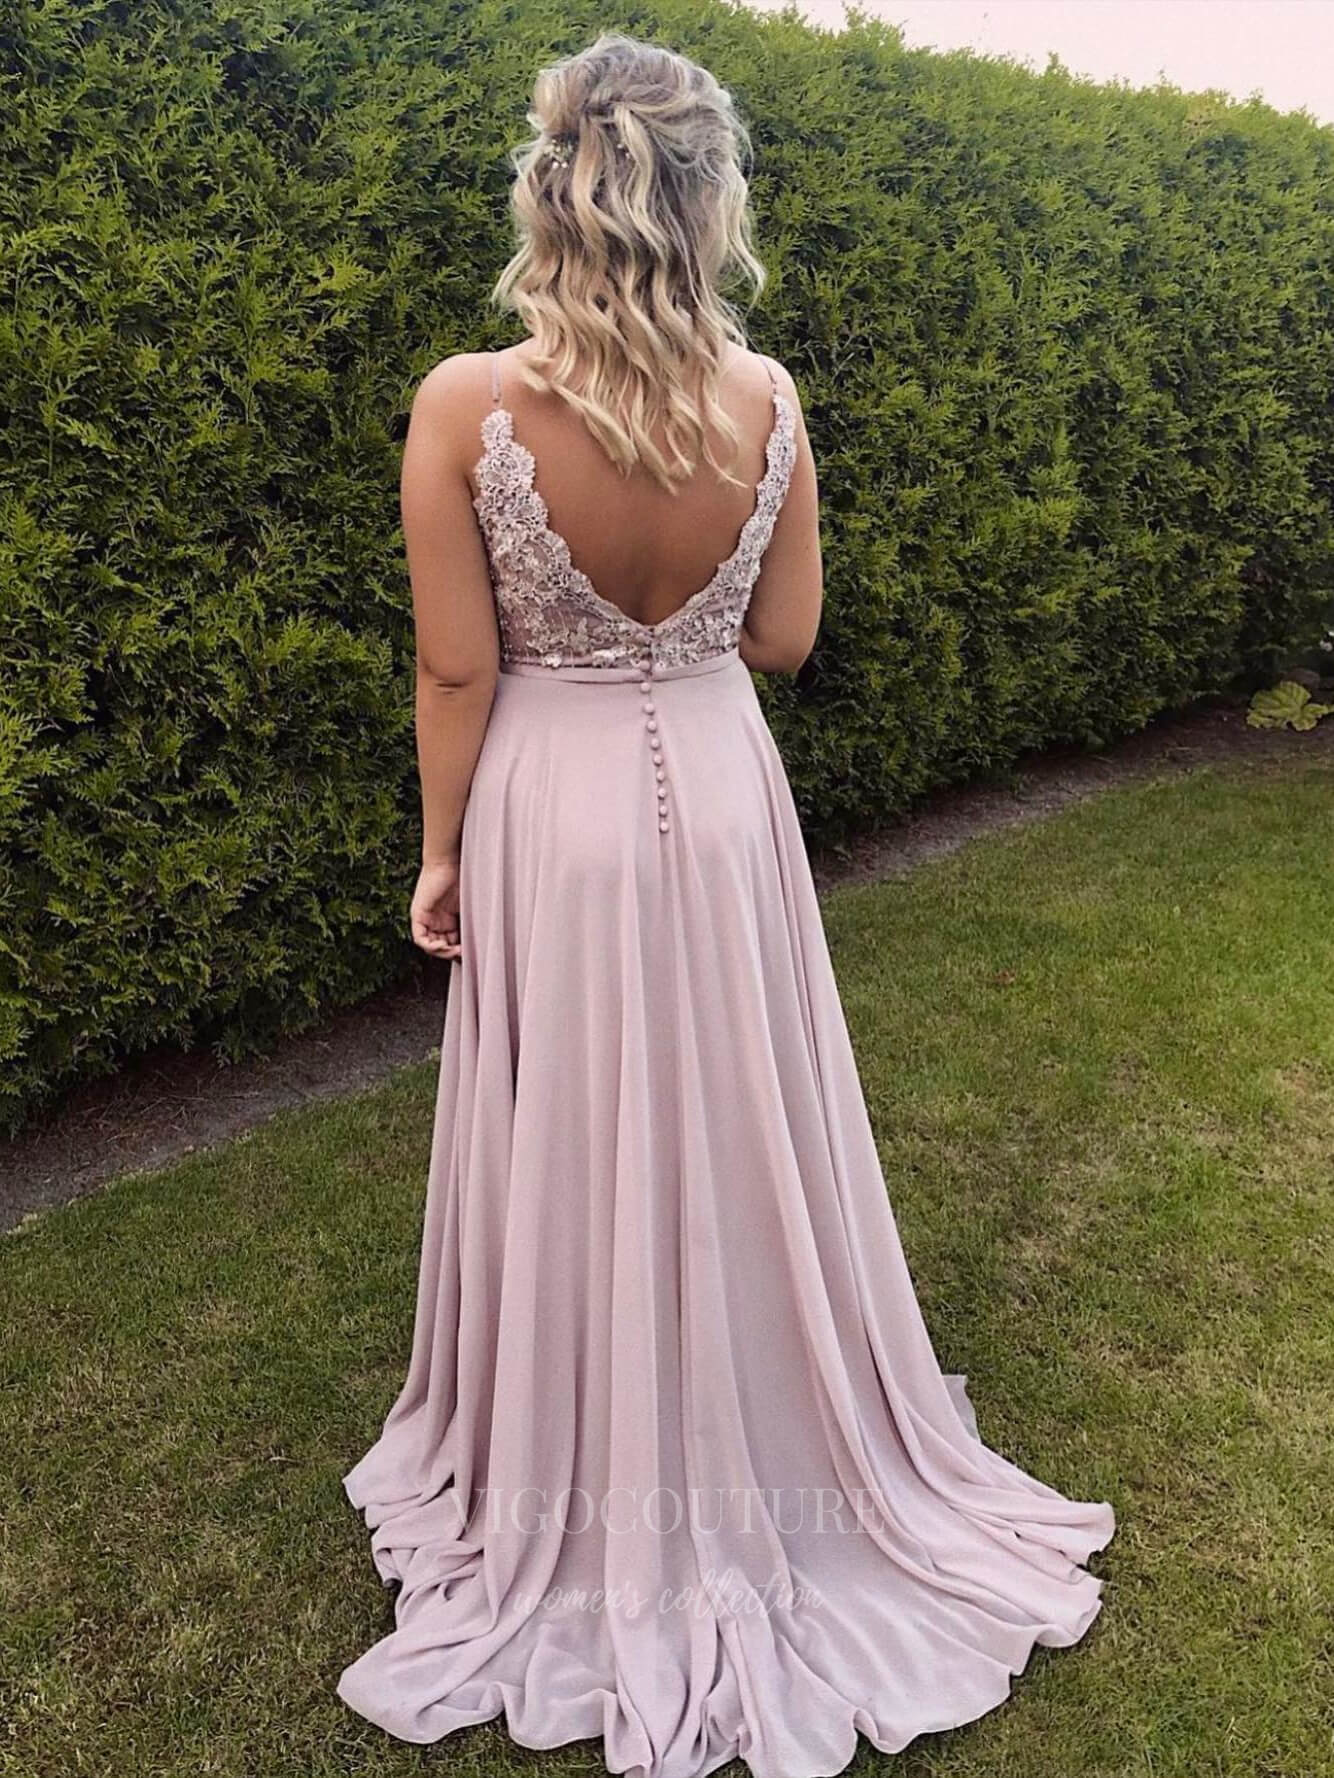 vigocouture-Blush Lace Applique Chiffon Prom Dress 20942-Prom Dresses-vigocouture-